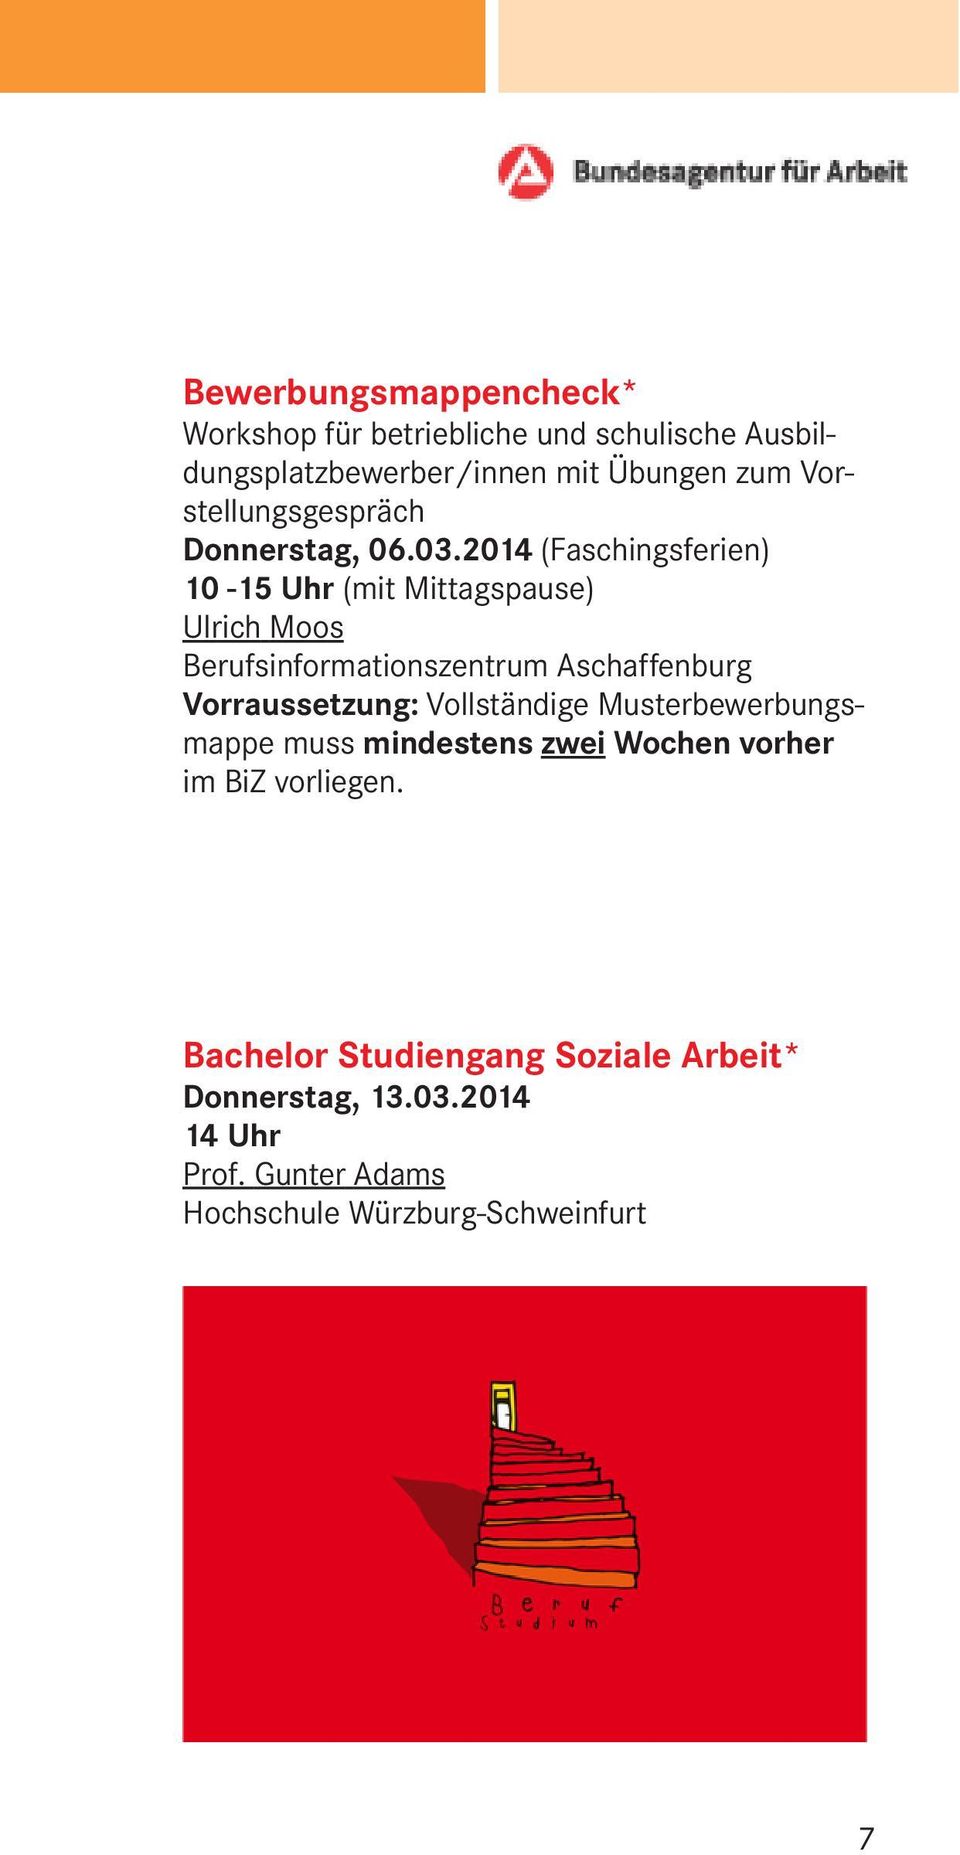 2014 (Faschingsferien) 10-15 Uhr (mit Mittagspause) Ulrich Moos Berufsinformationszentrum Aschaffenburg Vorraussetzung: